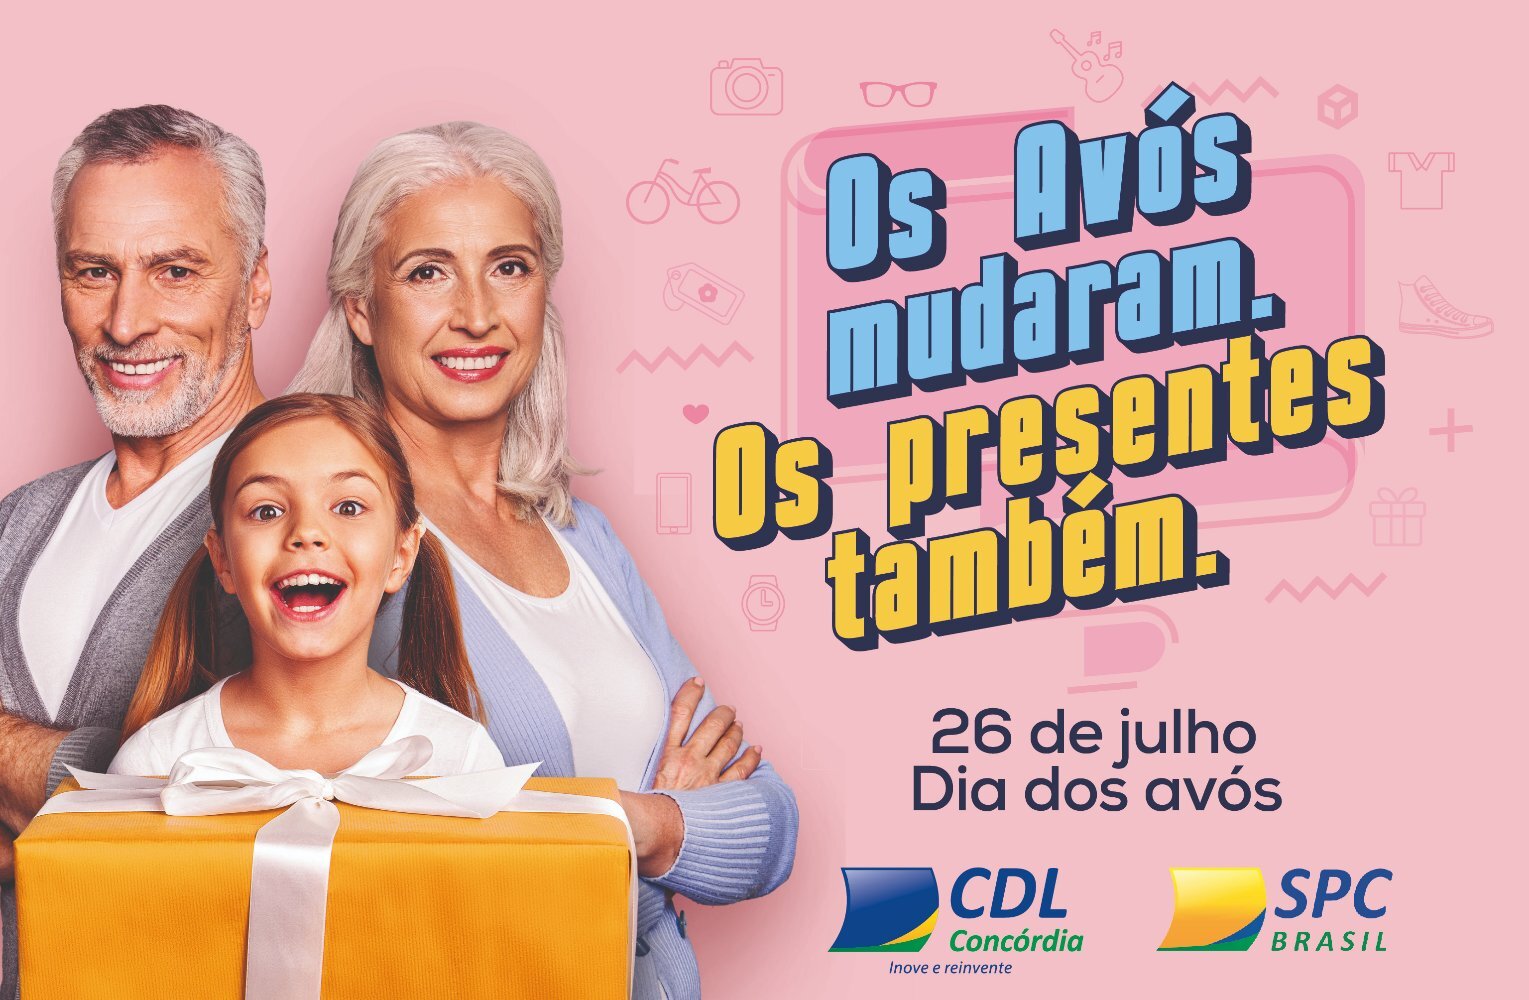 CDL Concórdia lança campanha para o Dia dos Avós